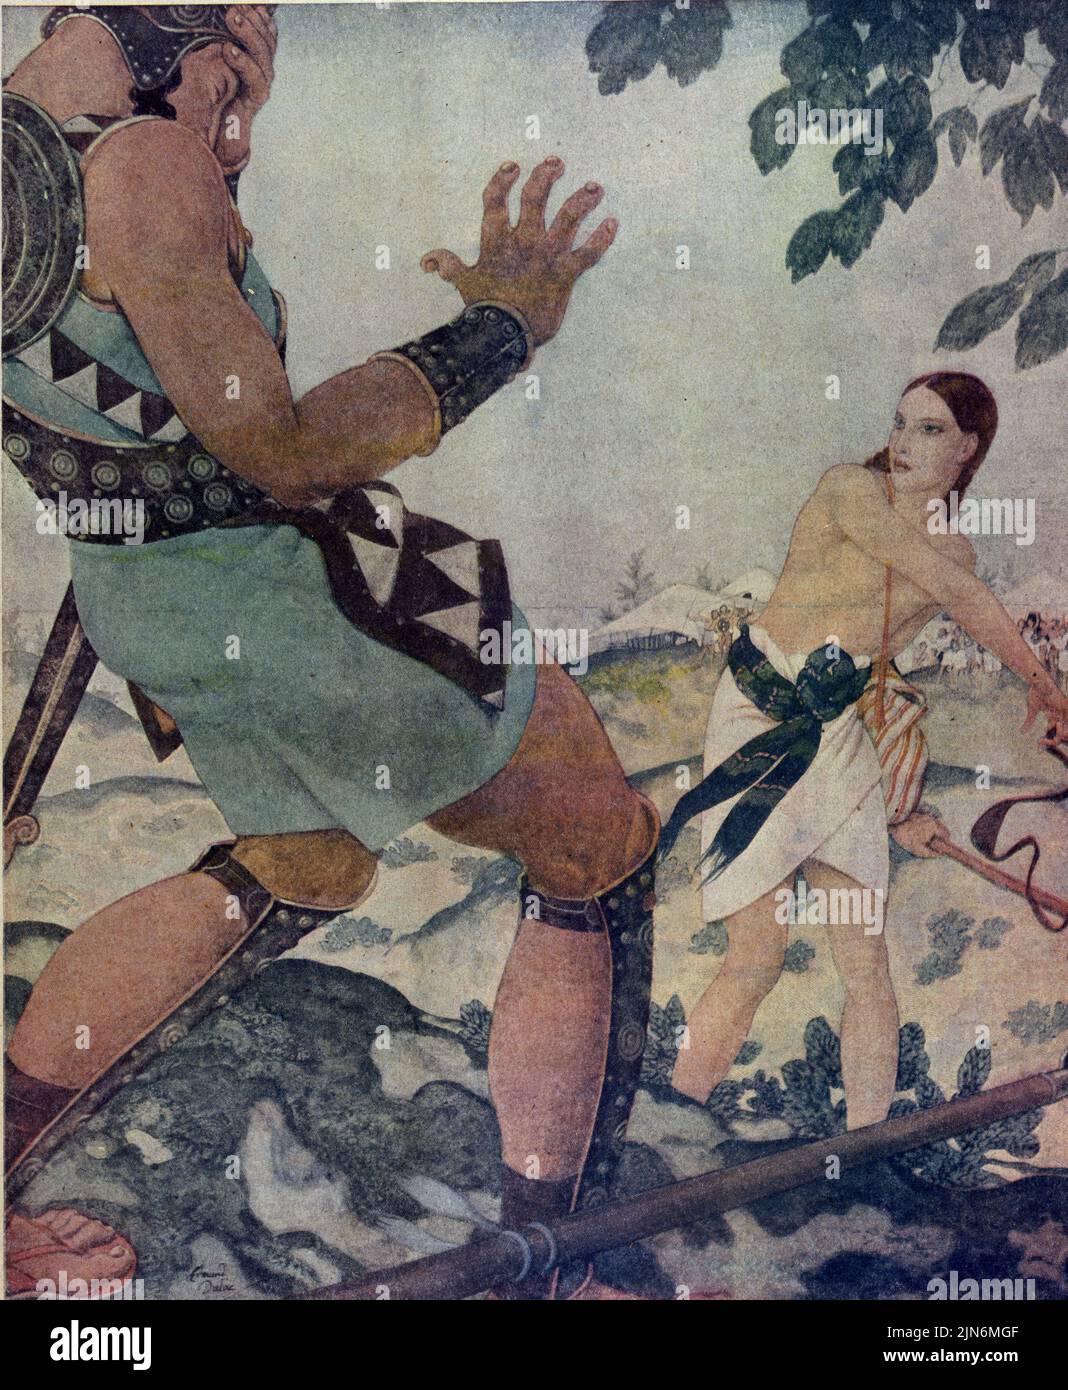 « David et Goliath » publié sur 30 novembre 1924 dans le magazine American Weekly Sunday peint par Edmund Dulac dans la série « Bible Scenes & Heroes ». Banque D'Images